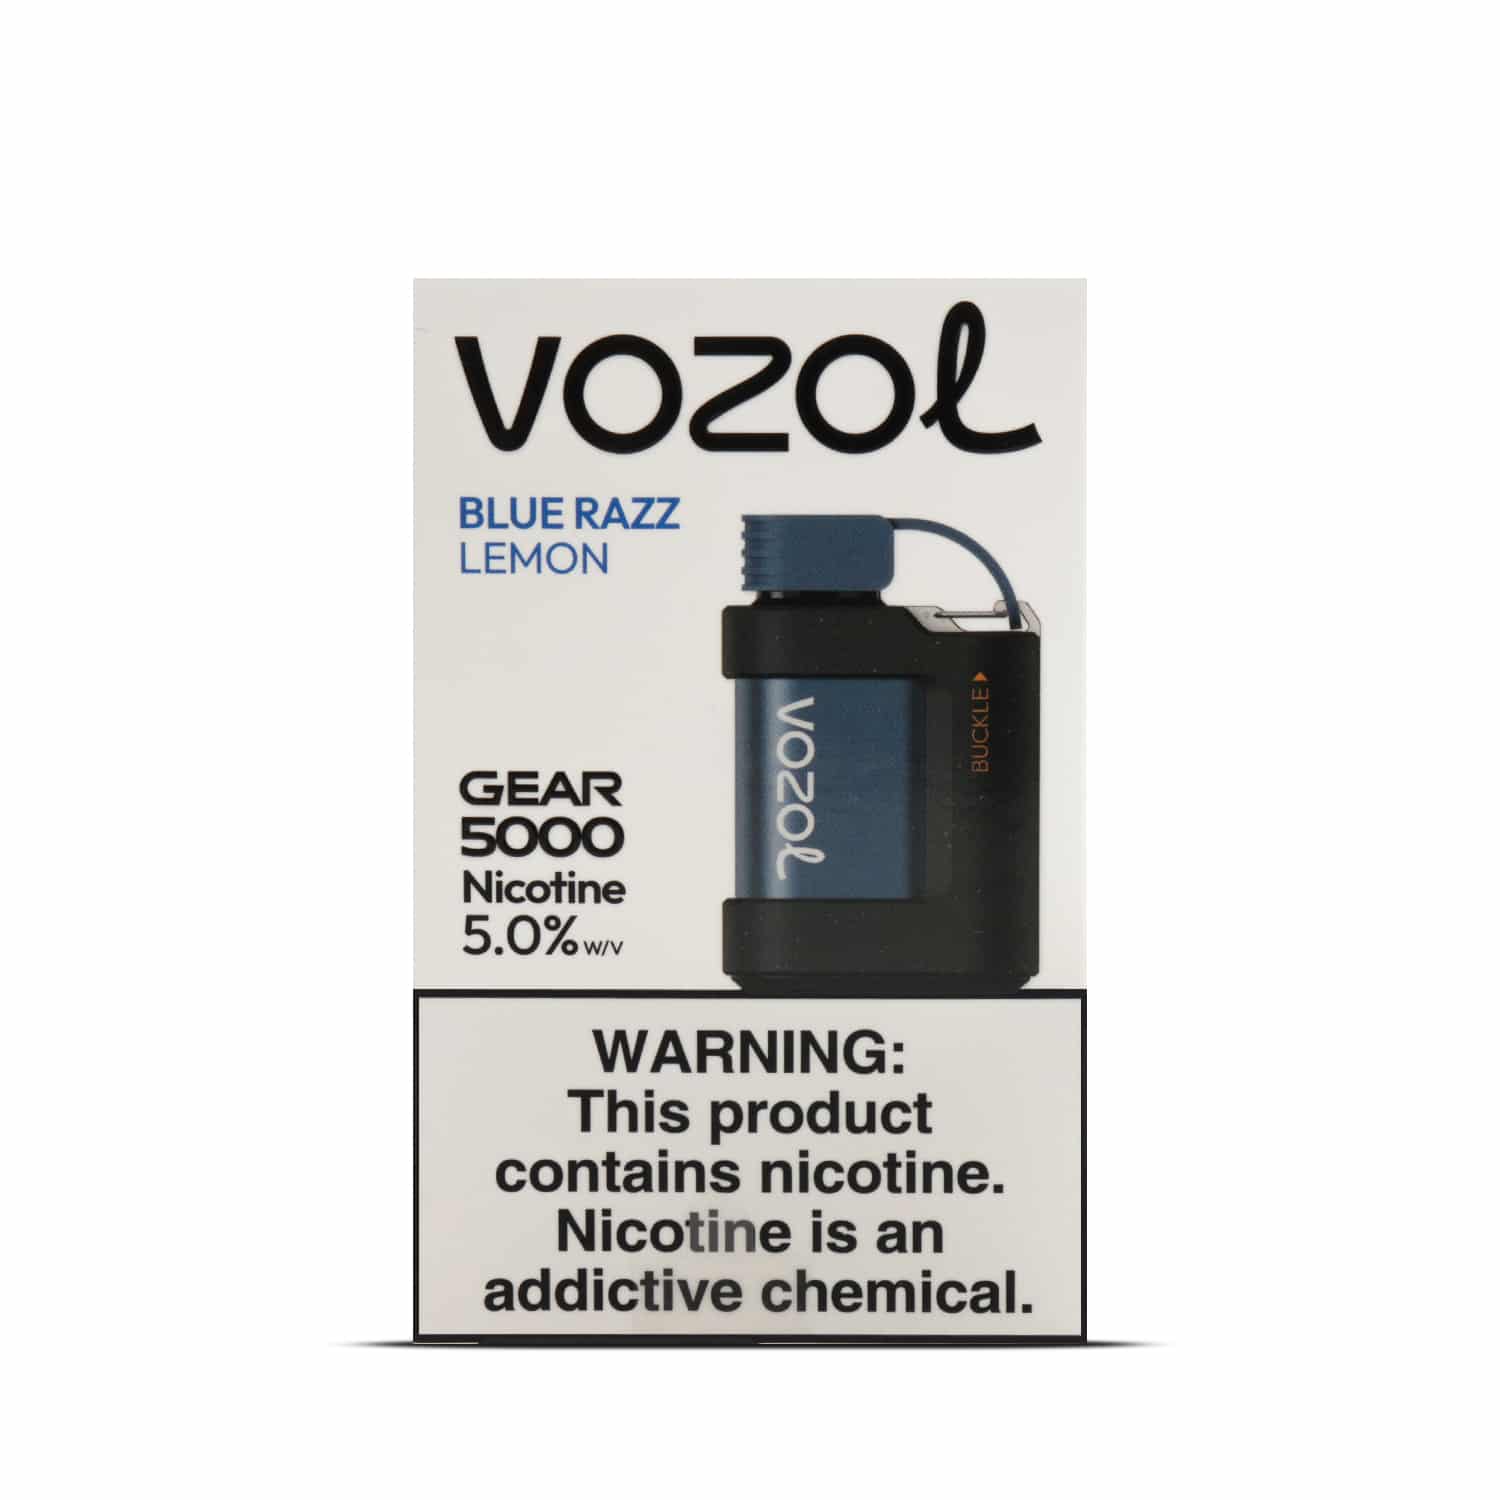 Vozol Gear 5000 Vape Desechable blue razz lemon